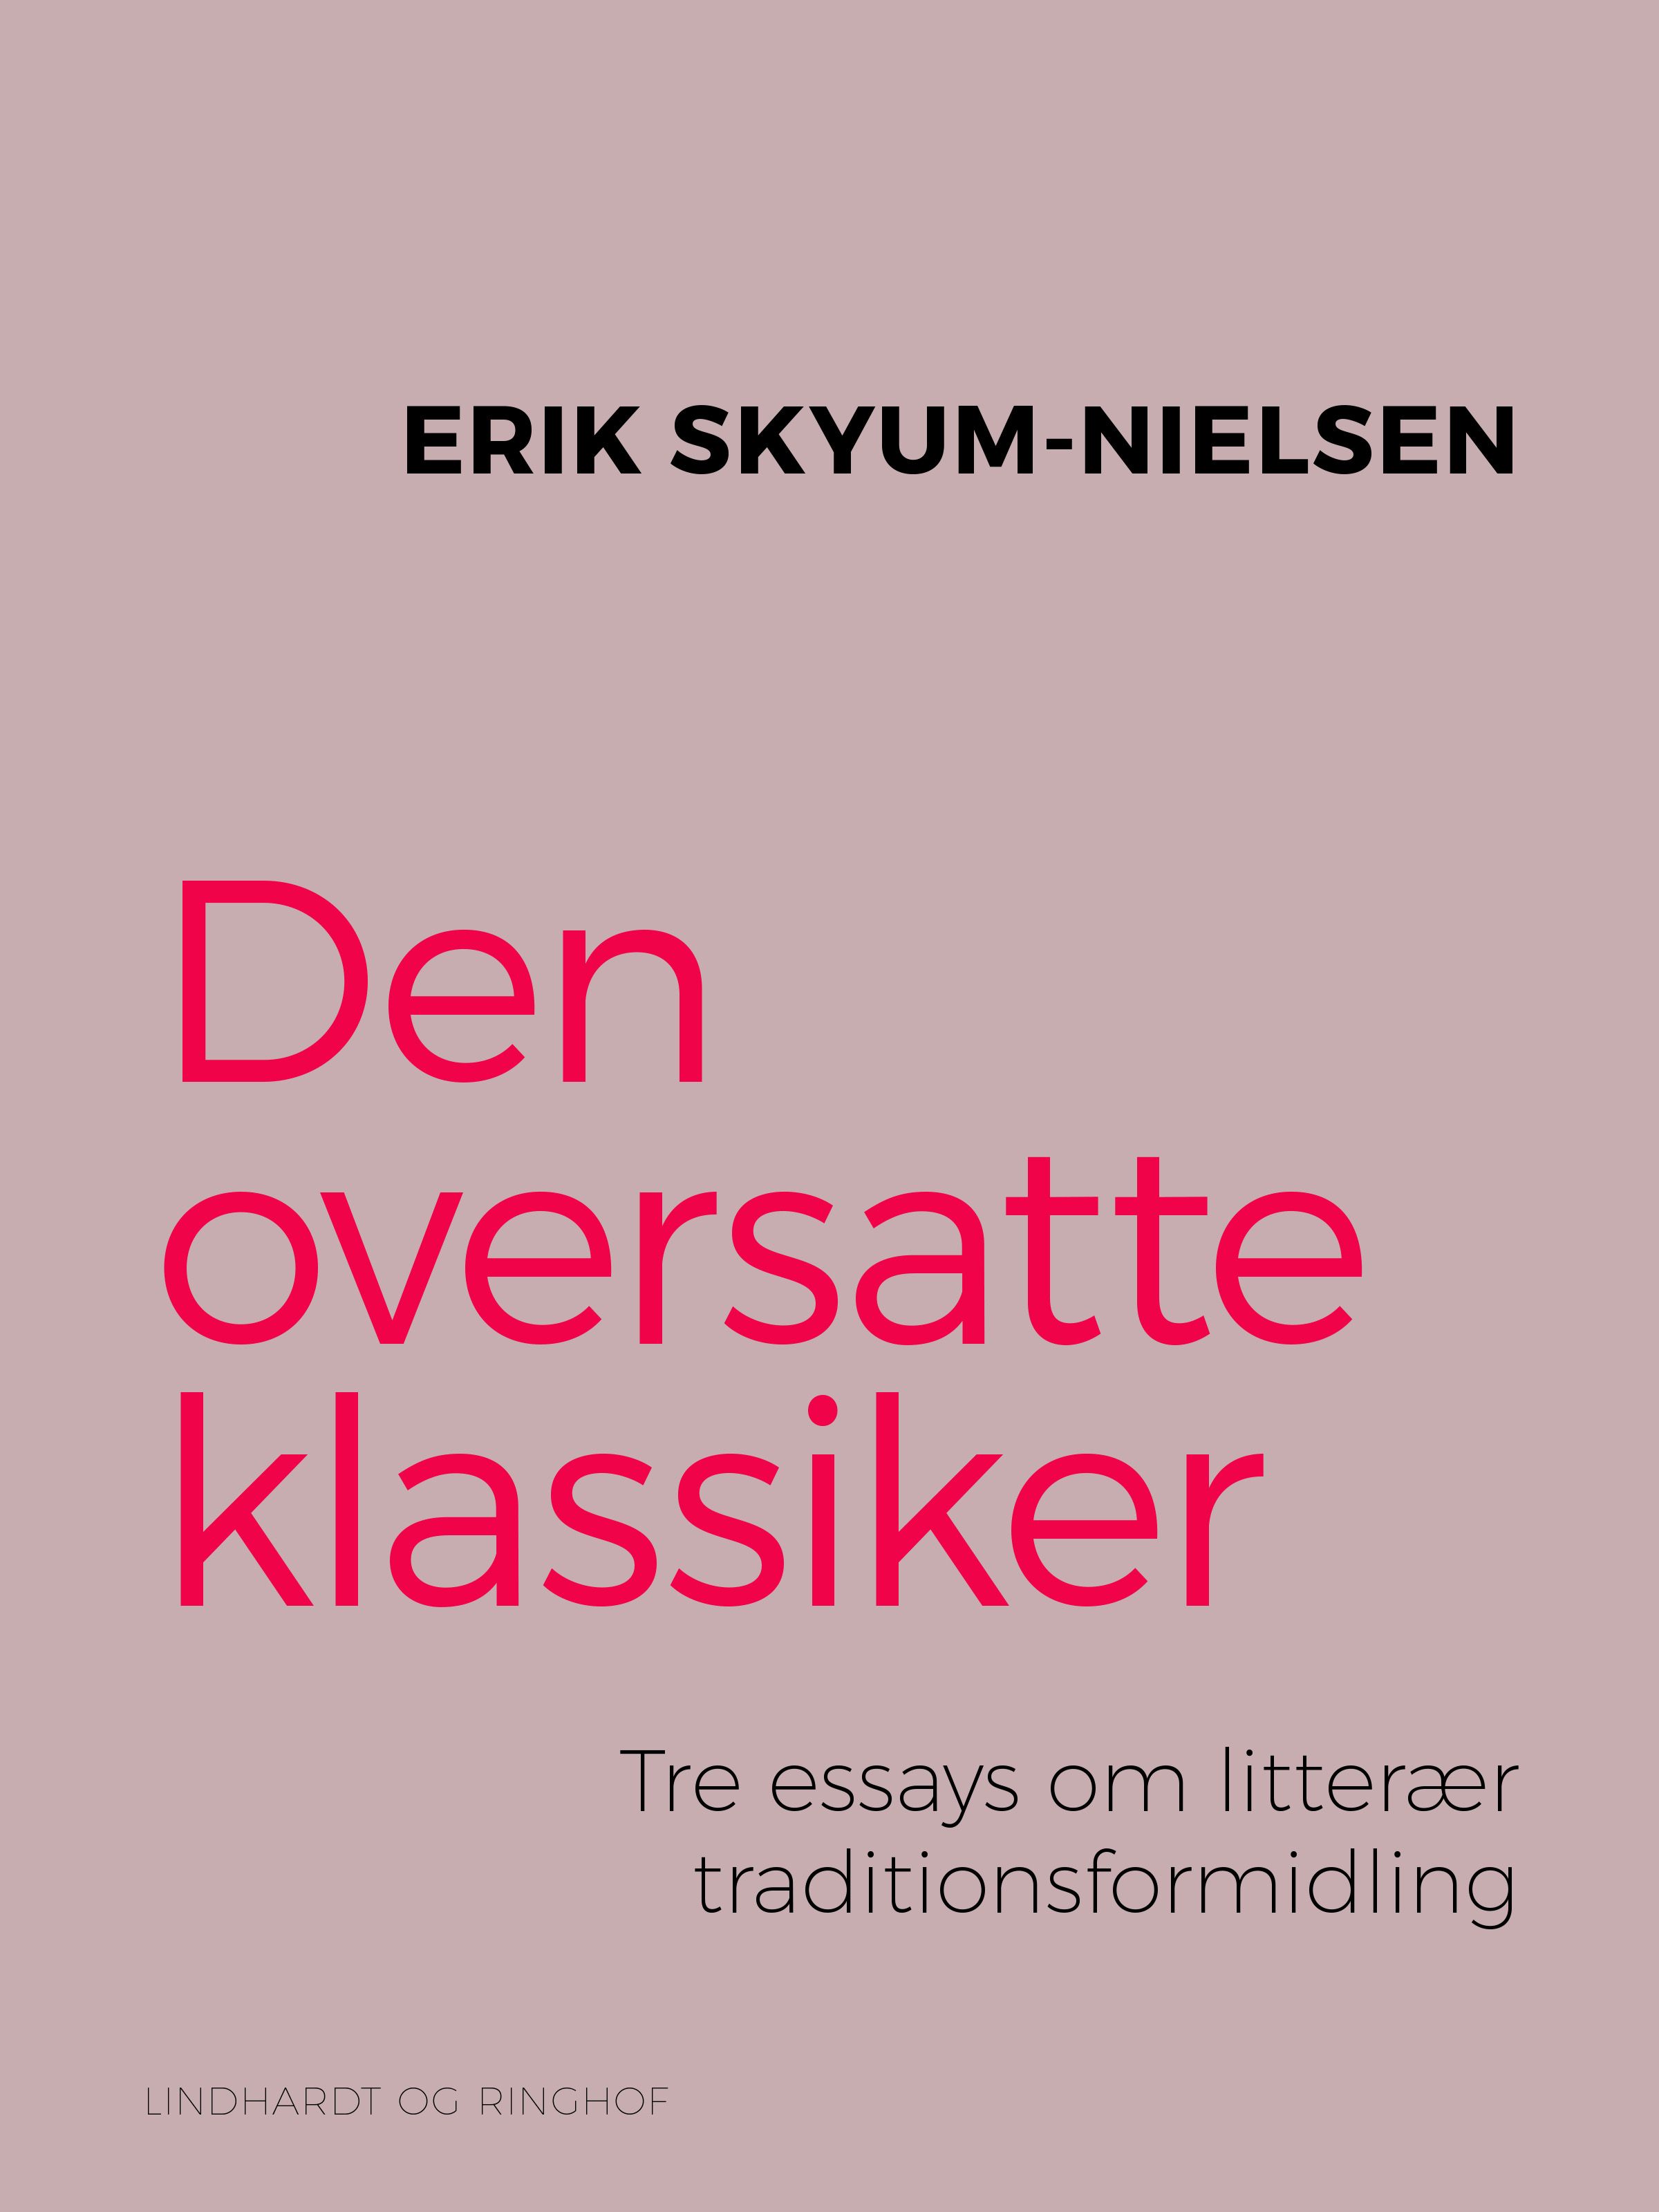 Den oversatte klassiker. Tre essays om litterær traditionsformidling, e-bog af Erik Skyum-Nielsen